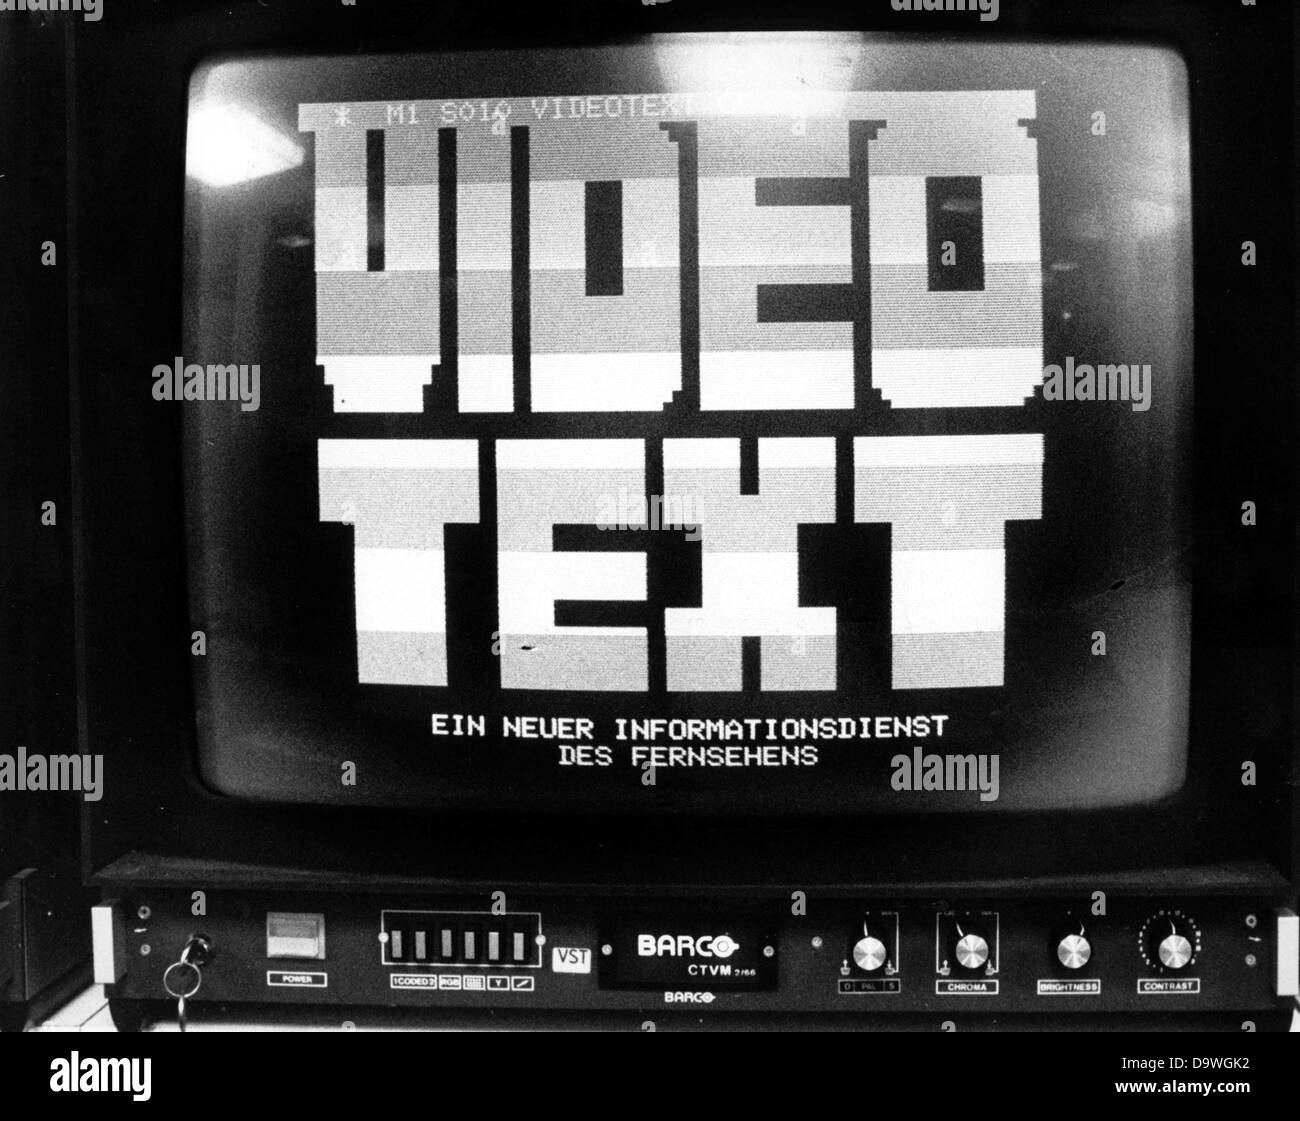 Der Eröffnung Rahmen des Informationsdienstes "Videotext", die vom Fernsehen angeboten wird.  Bild vom 24. August 1979. Stockfoto